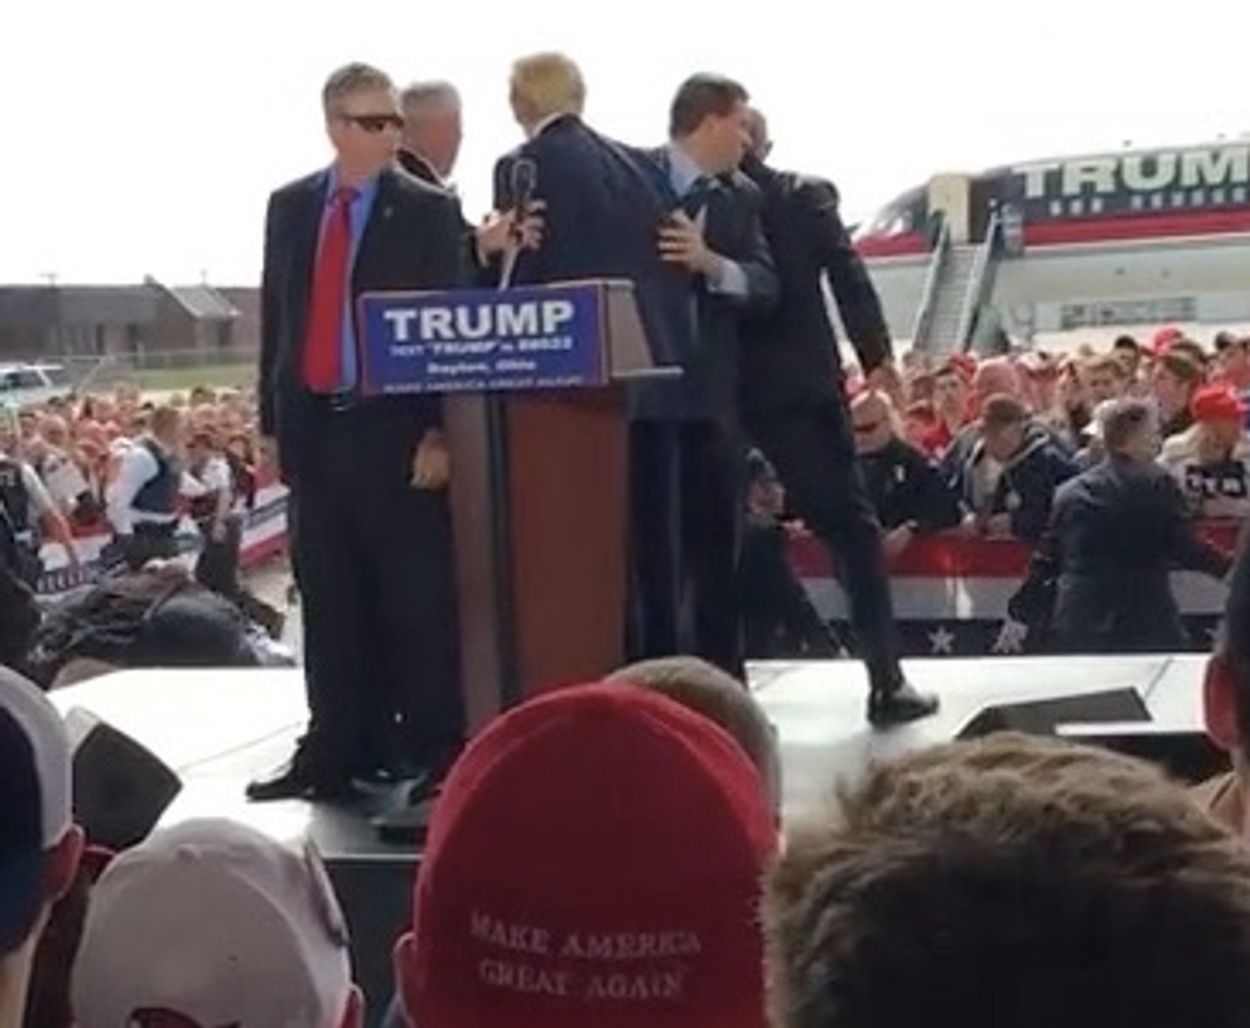 Afbeelding van Campagne Trump escaleert: man bespringt podium, burgemeester NY noemt kandidaat racist